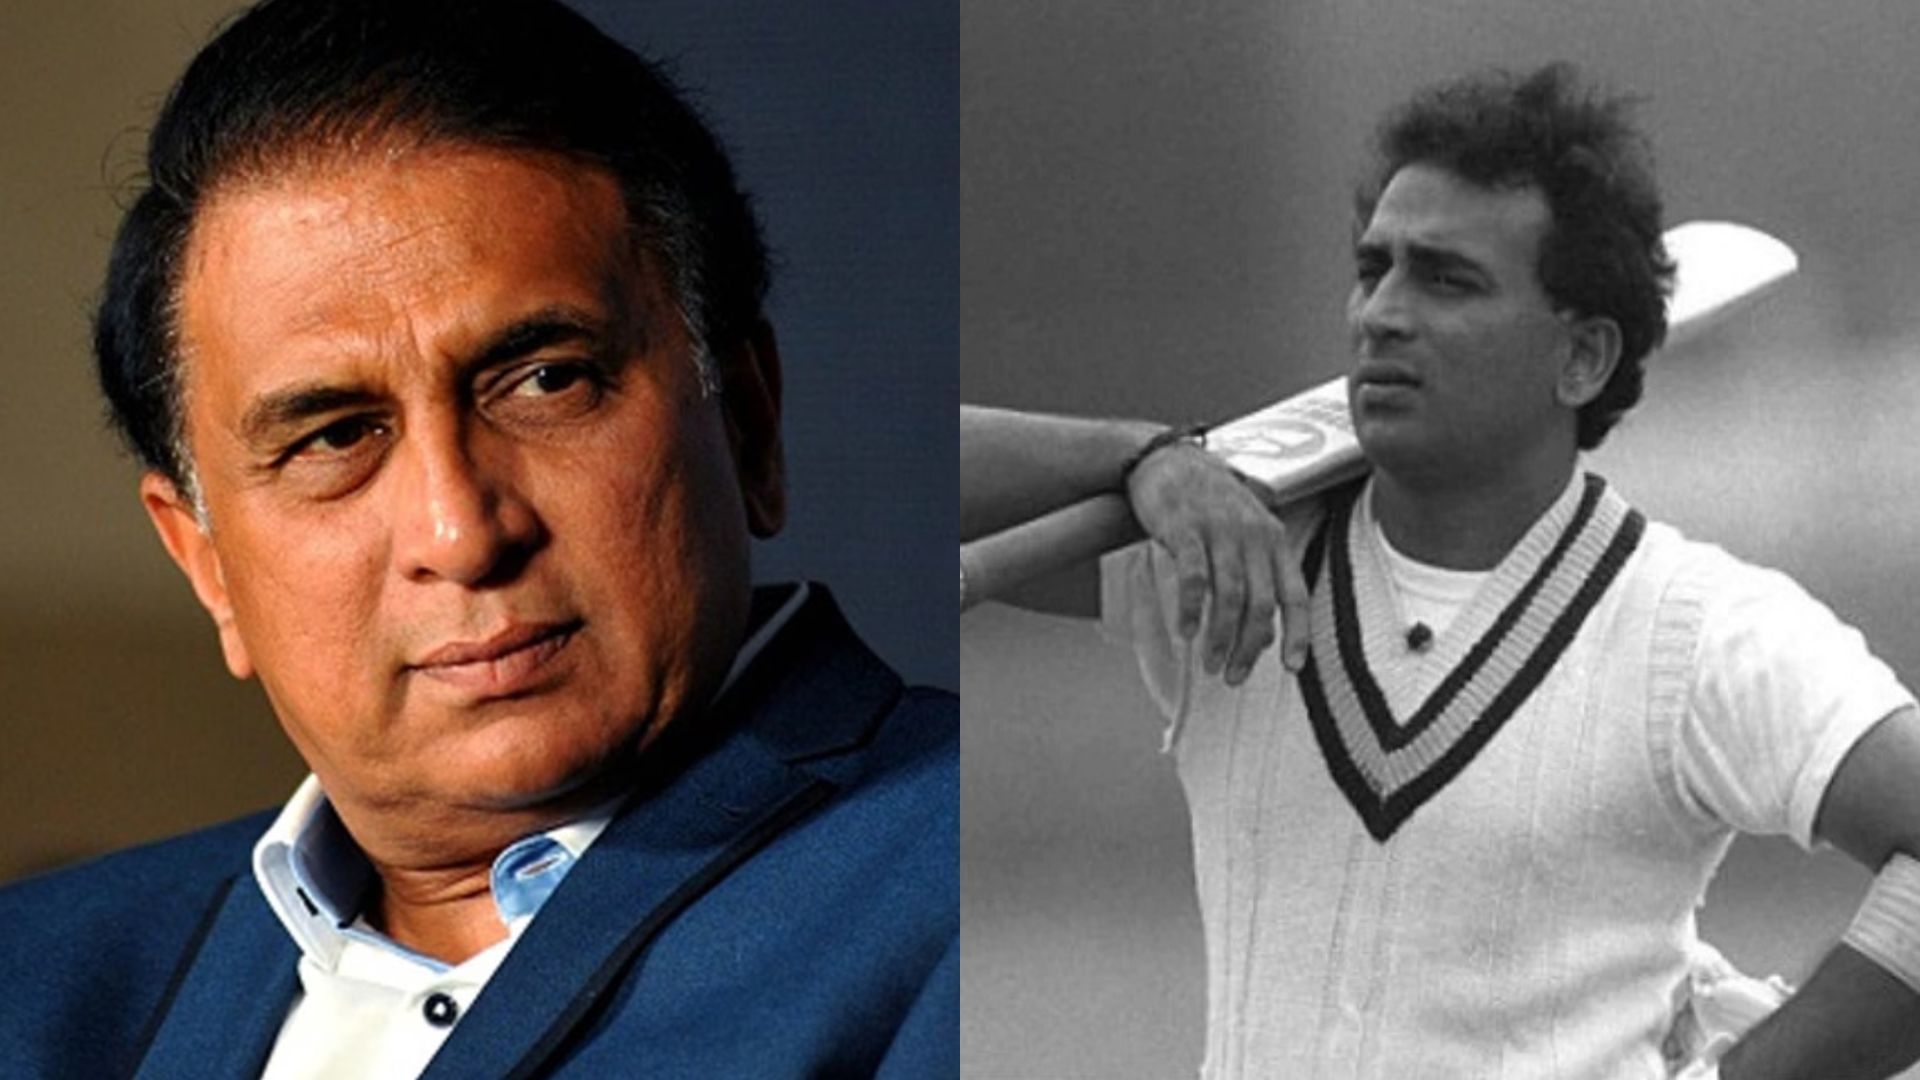 Sunil Gavaskar recalled an incident involving rift between former Indian teammates when he was the skipper (P.C.:X)